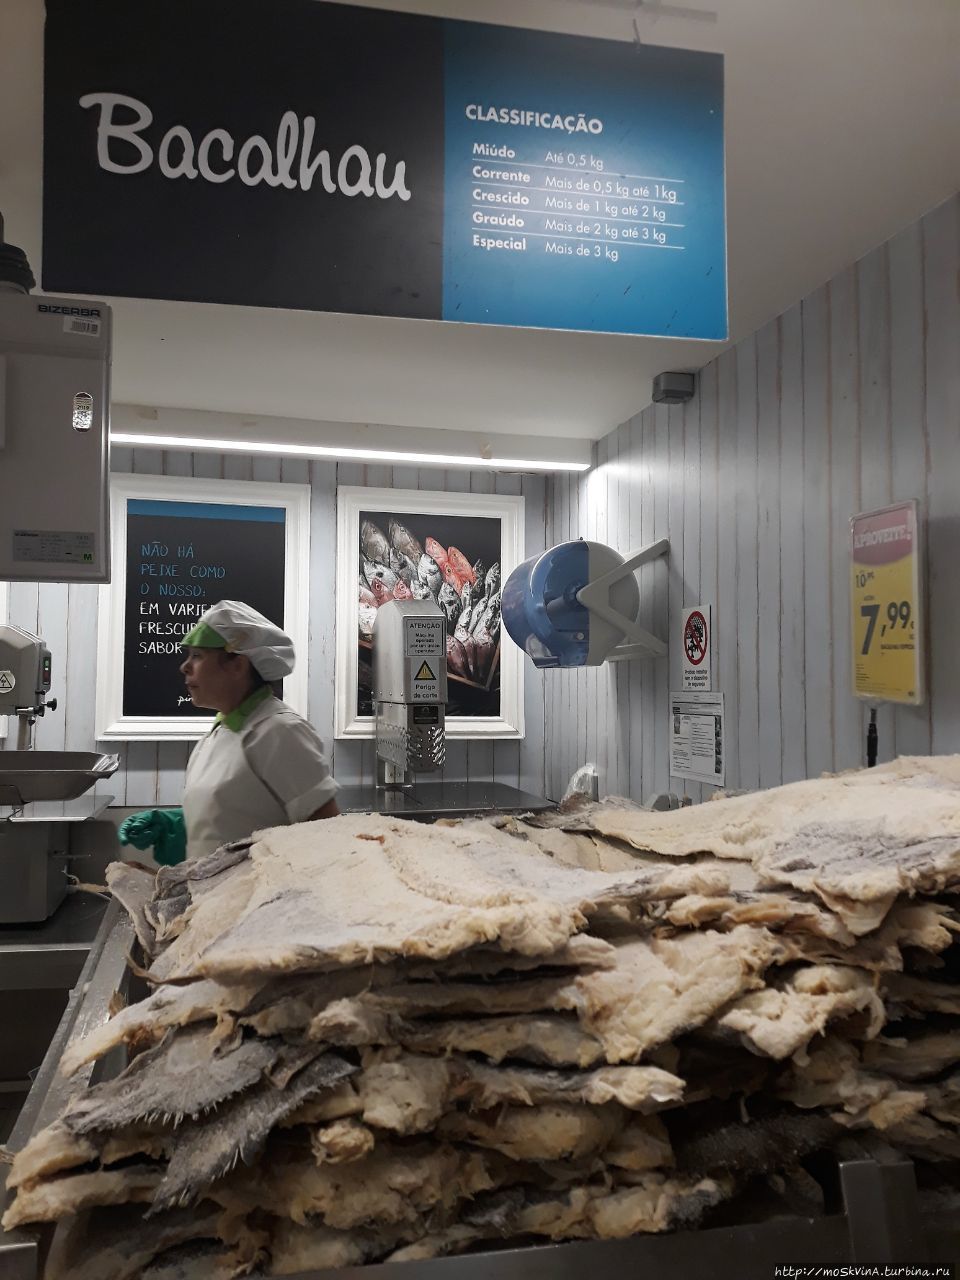 Бакаляу — солёная и сушенная треска, главное блюдо местных жителей Албуфейра, Португалия